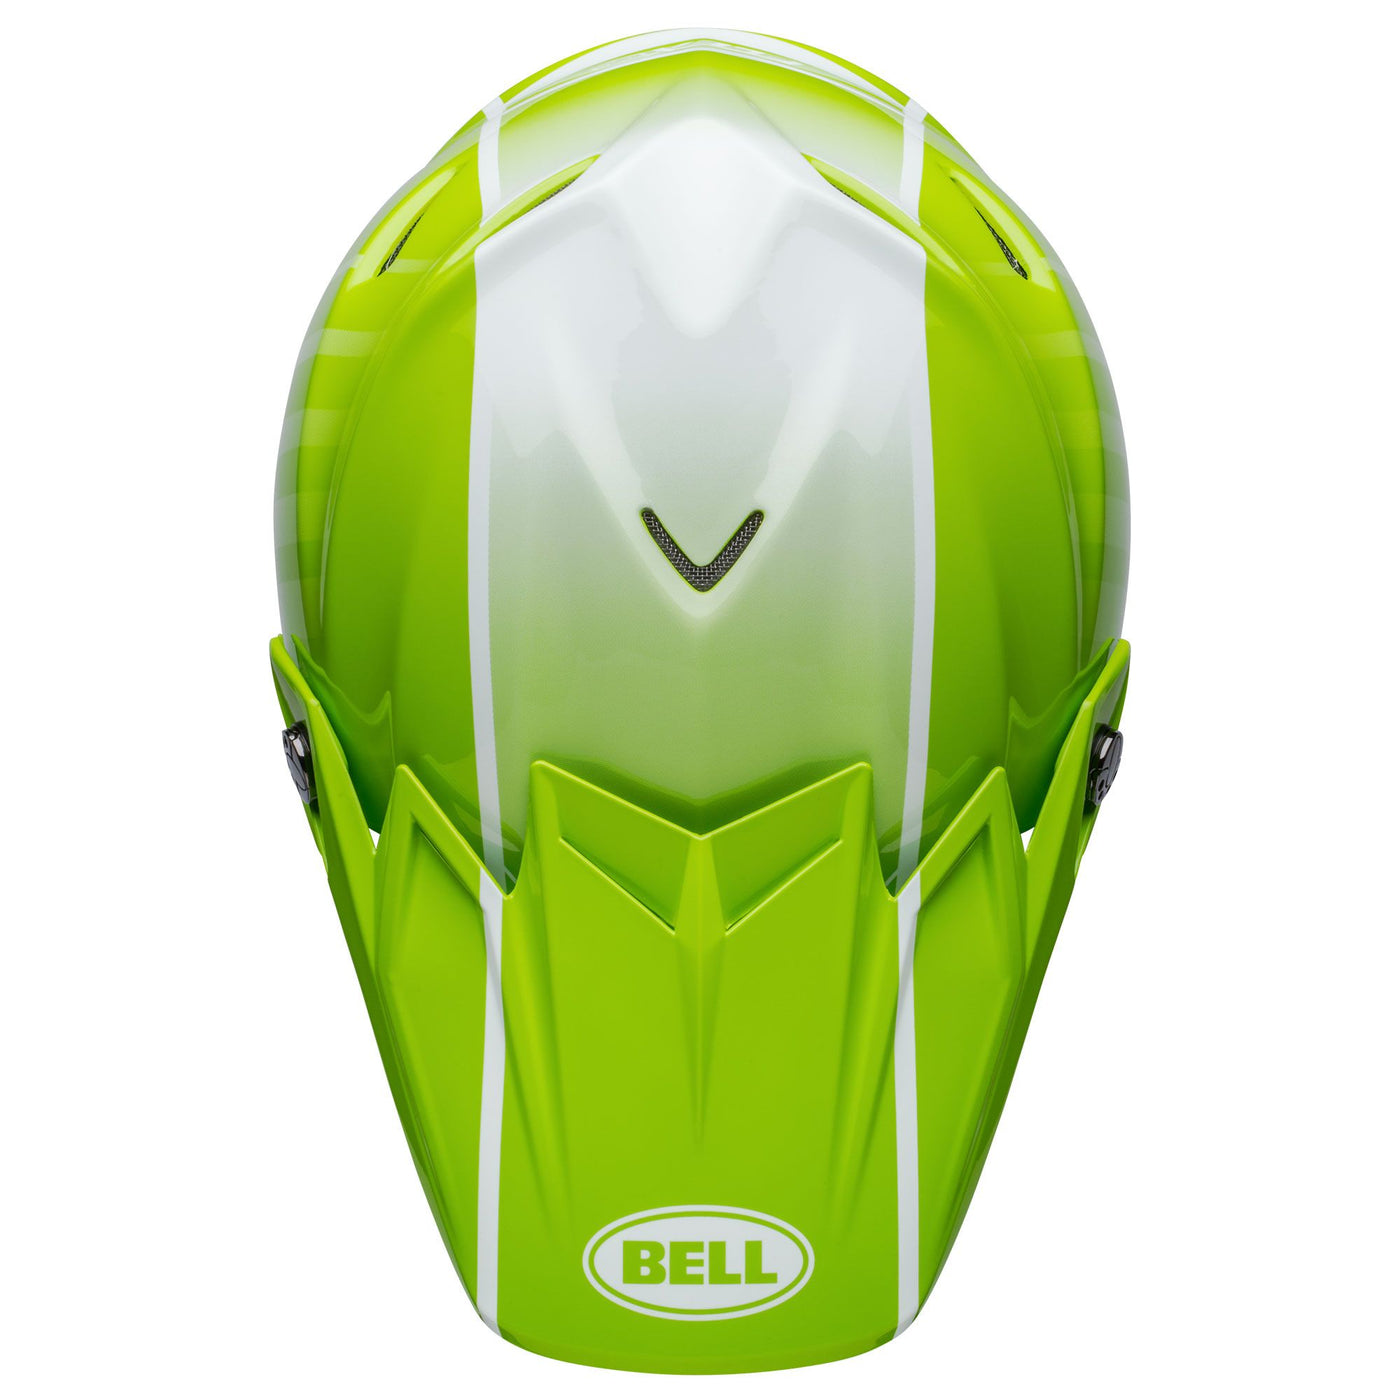 bell moto 9s flex dirt motorcycle helmet sprint matte gloss green black top